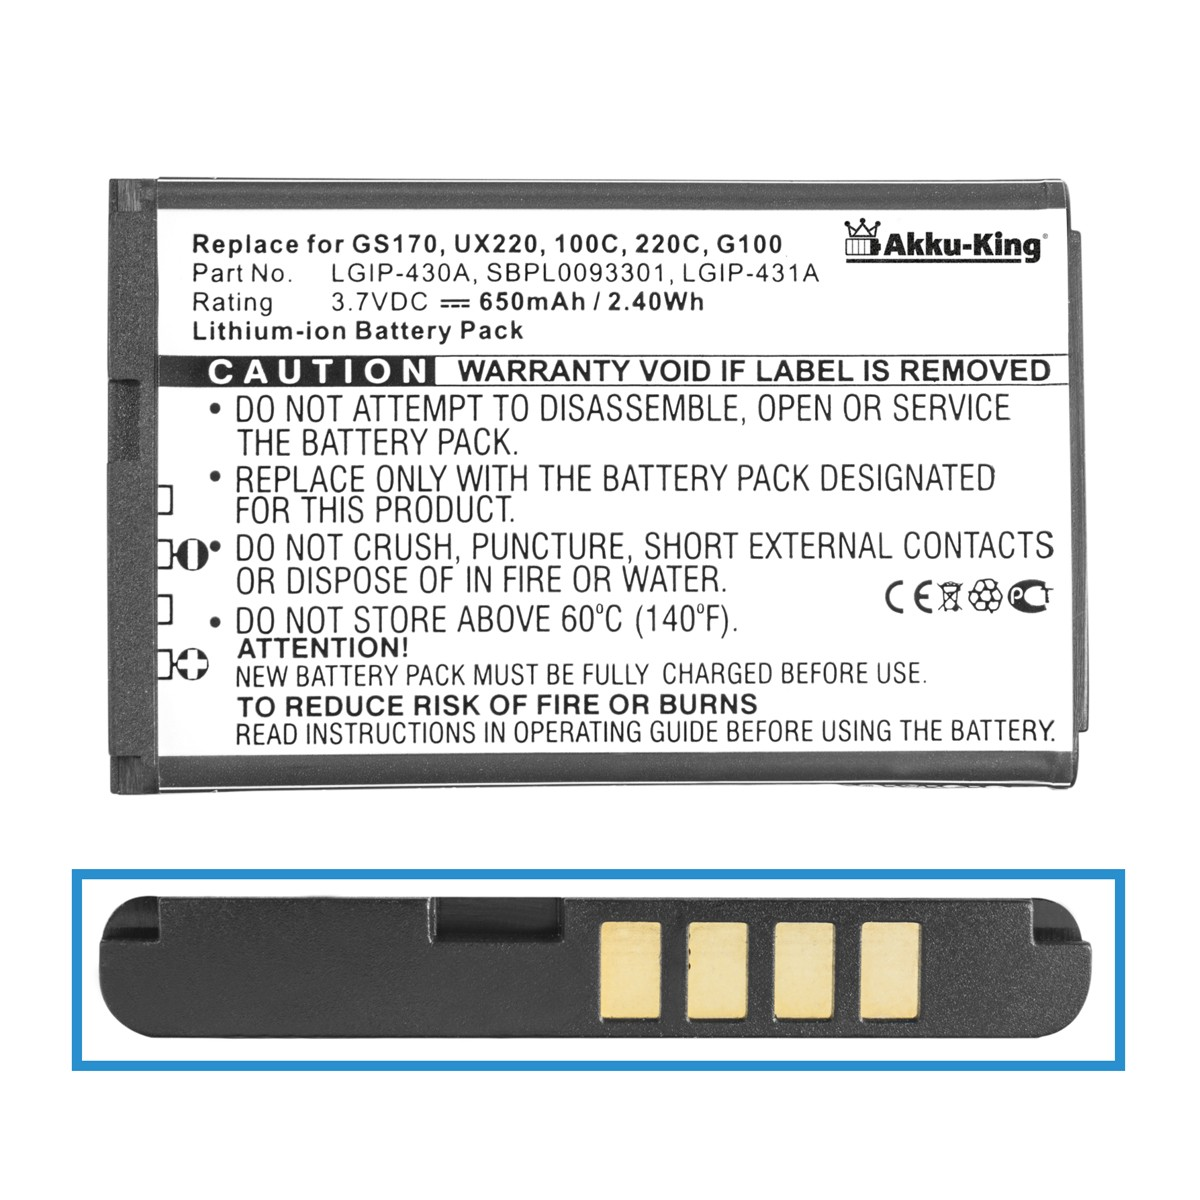 LG LGIP-430A 650mAh Handy-Akku, AKKU-KING kompatibel Akku Volt, 3.7 Li-Ion mit